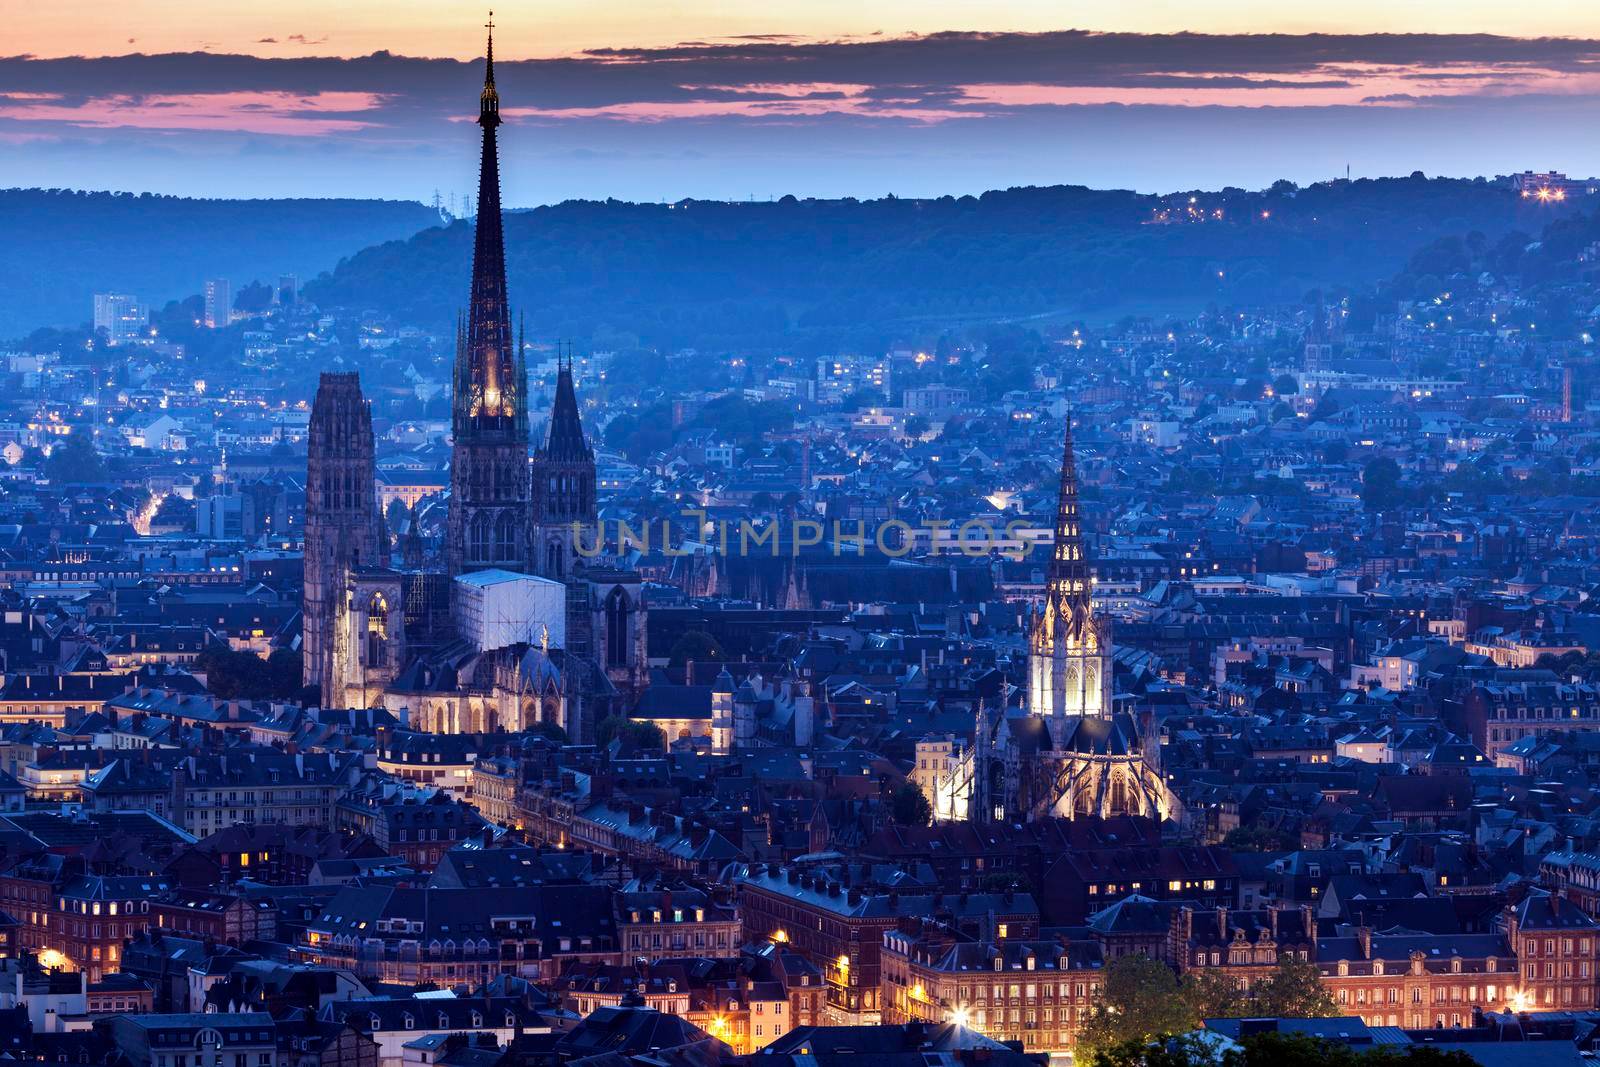 Panorama of Rouen at sunset by benkrut